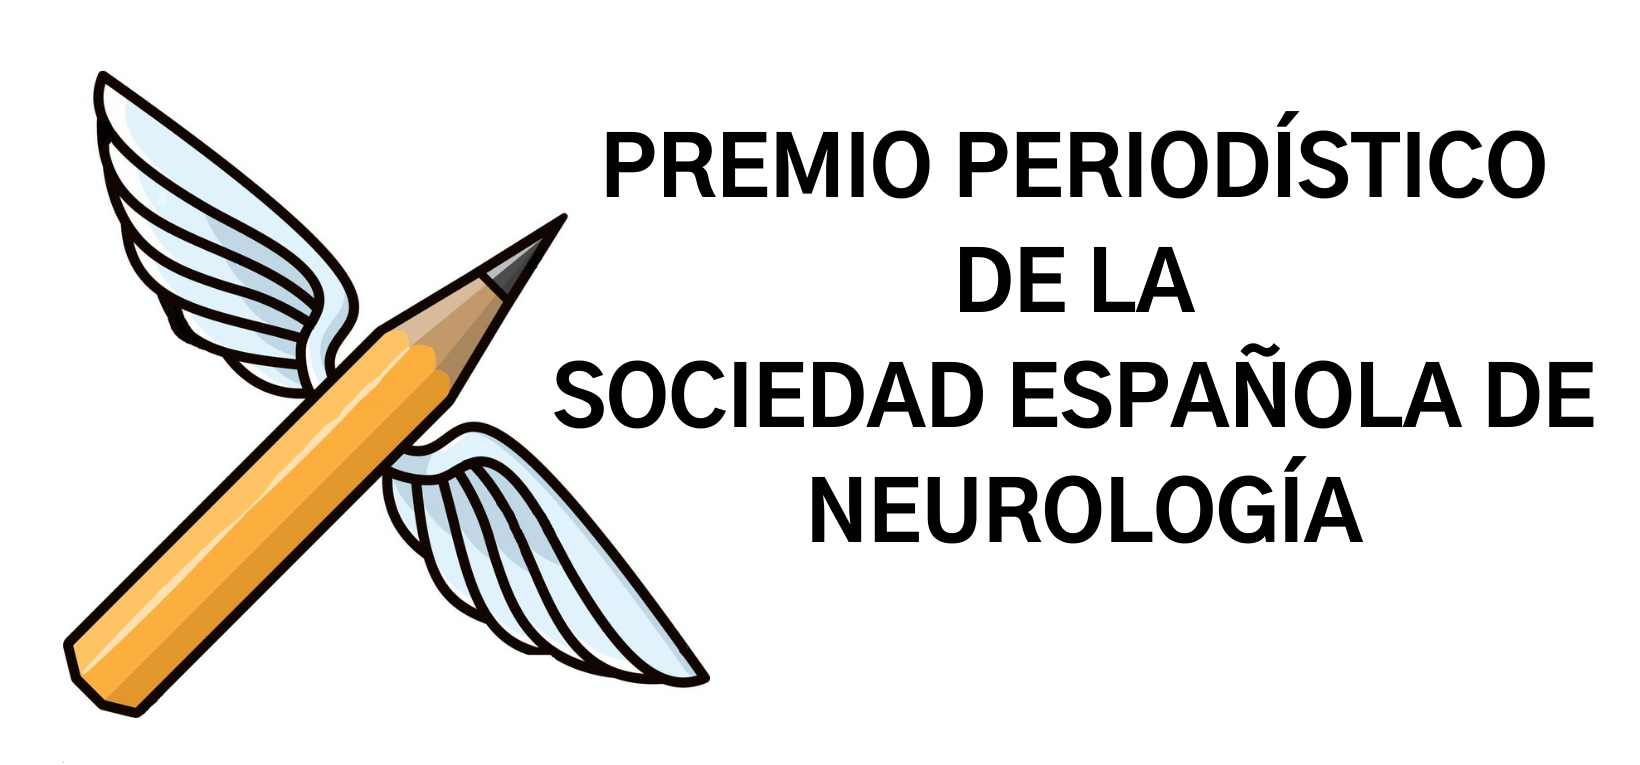 Nace el I Premio Periodístico de la Sociedad Española de Neurología